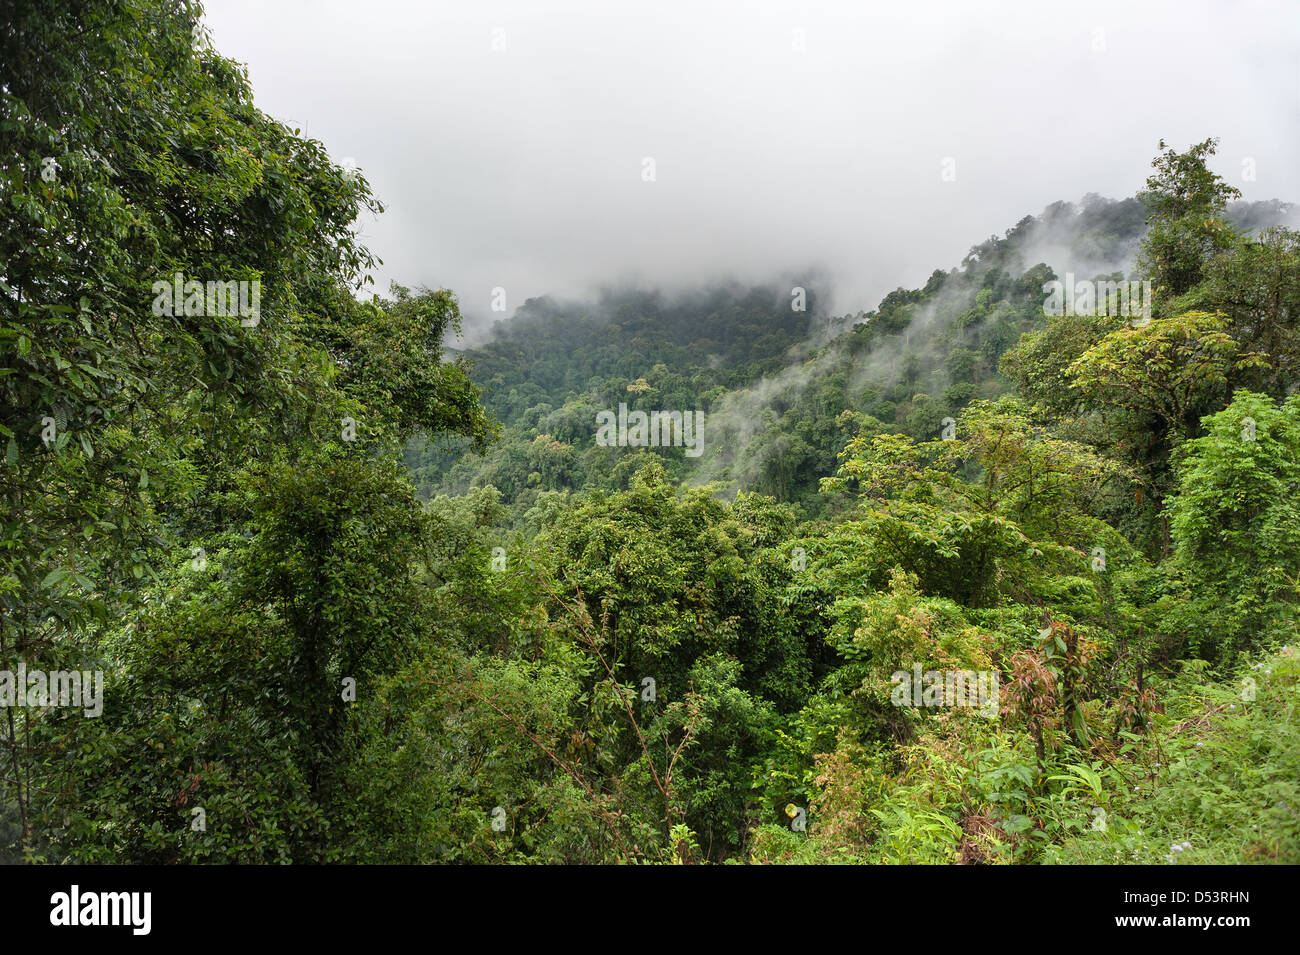 La foresta vergine è avvolta nella nebbia in alta montagna della western Arunachal Pradesh vicino alla città di Dirang, India. Foto Stock